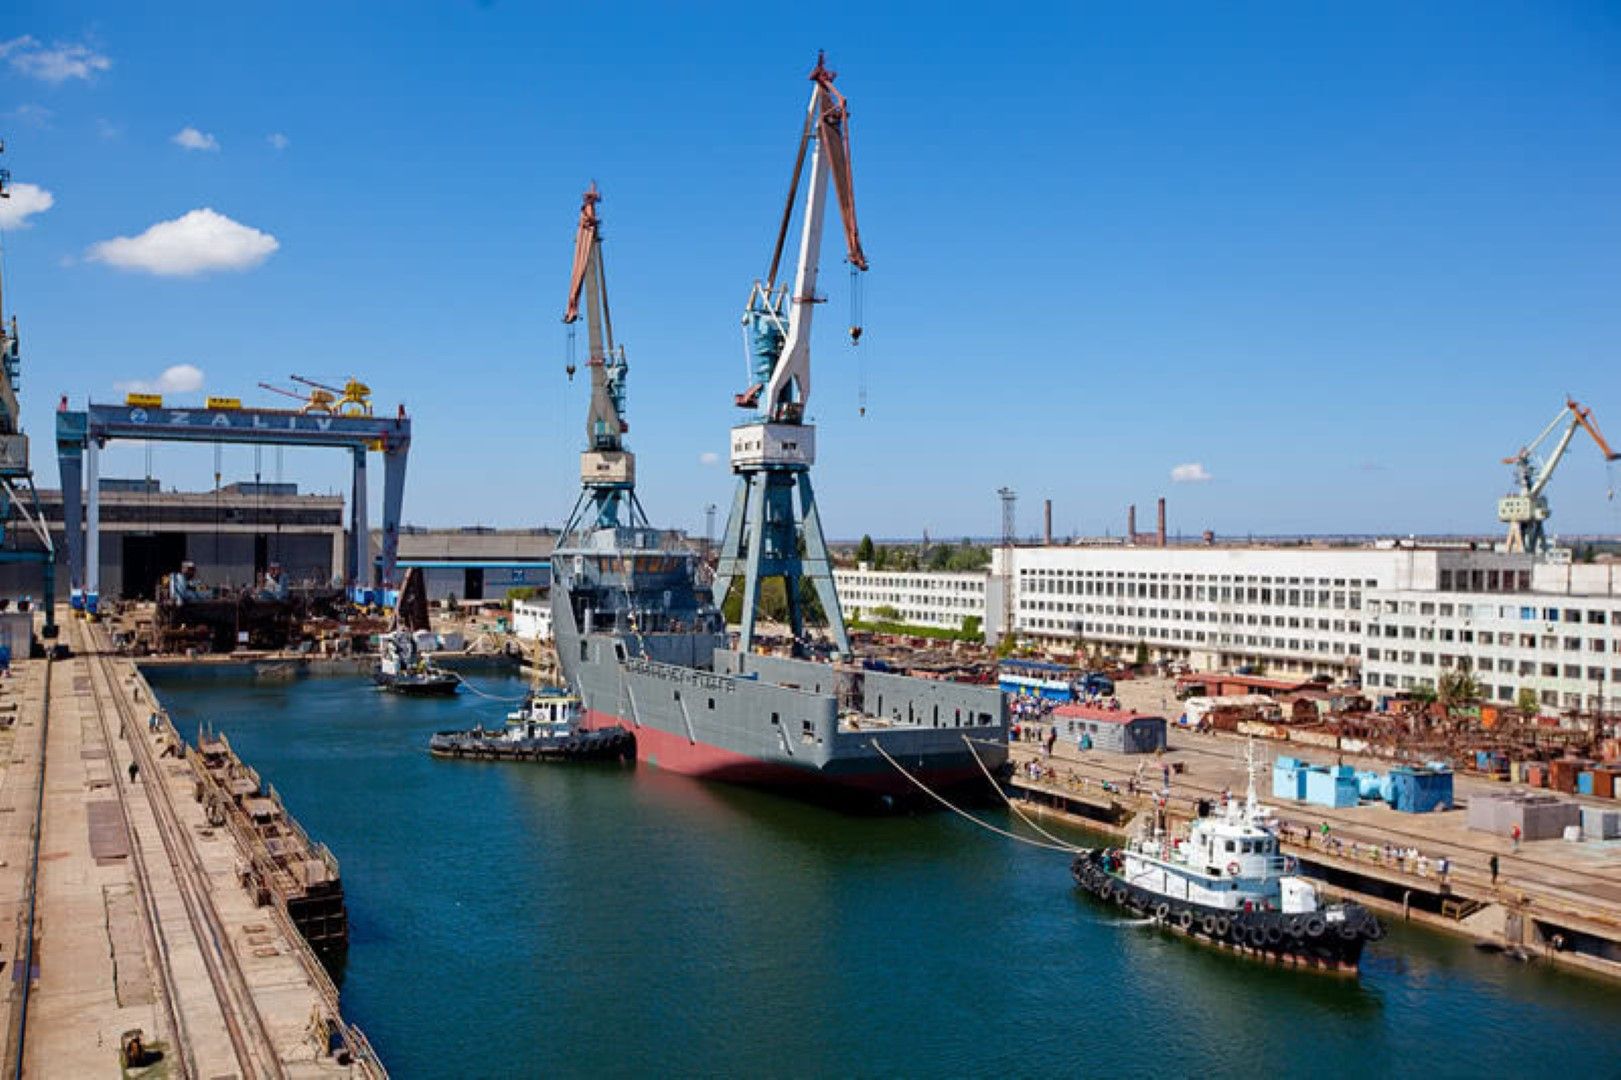 Кораборемонтният завод "Залив" в Керч произвежда плавателни съдове за военни и граждански цели